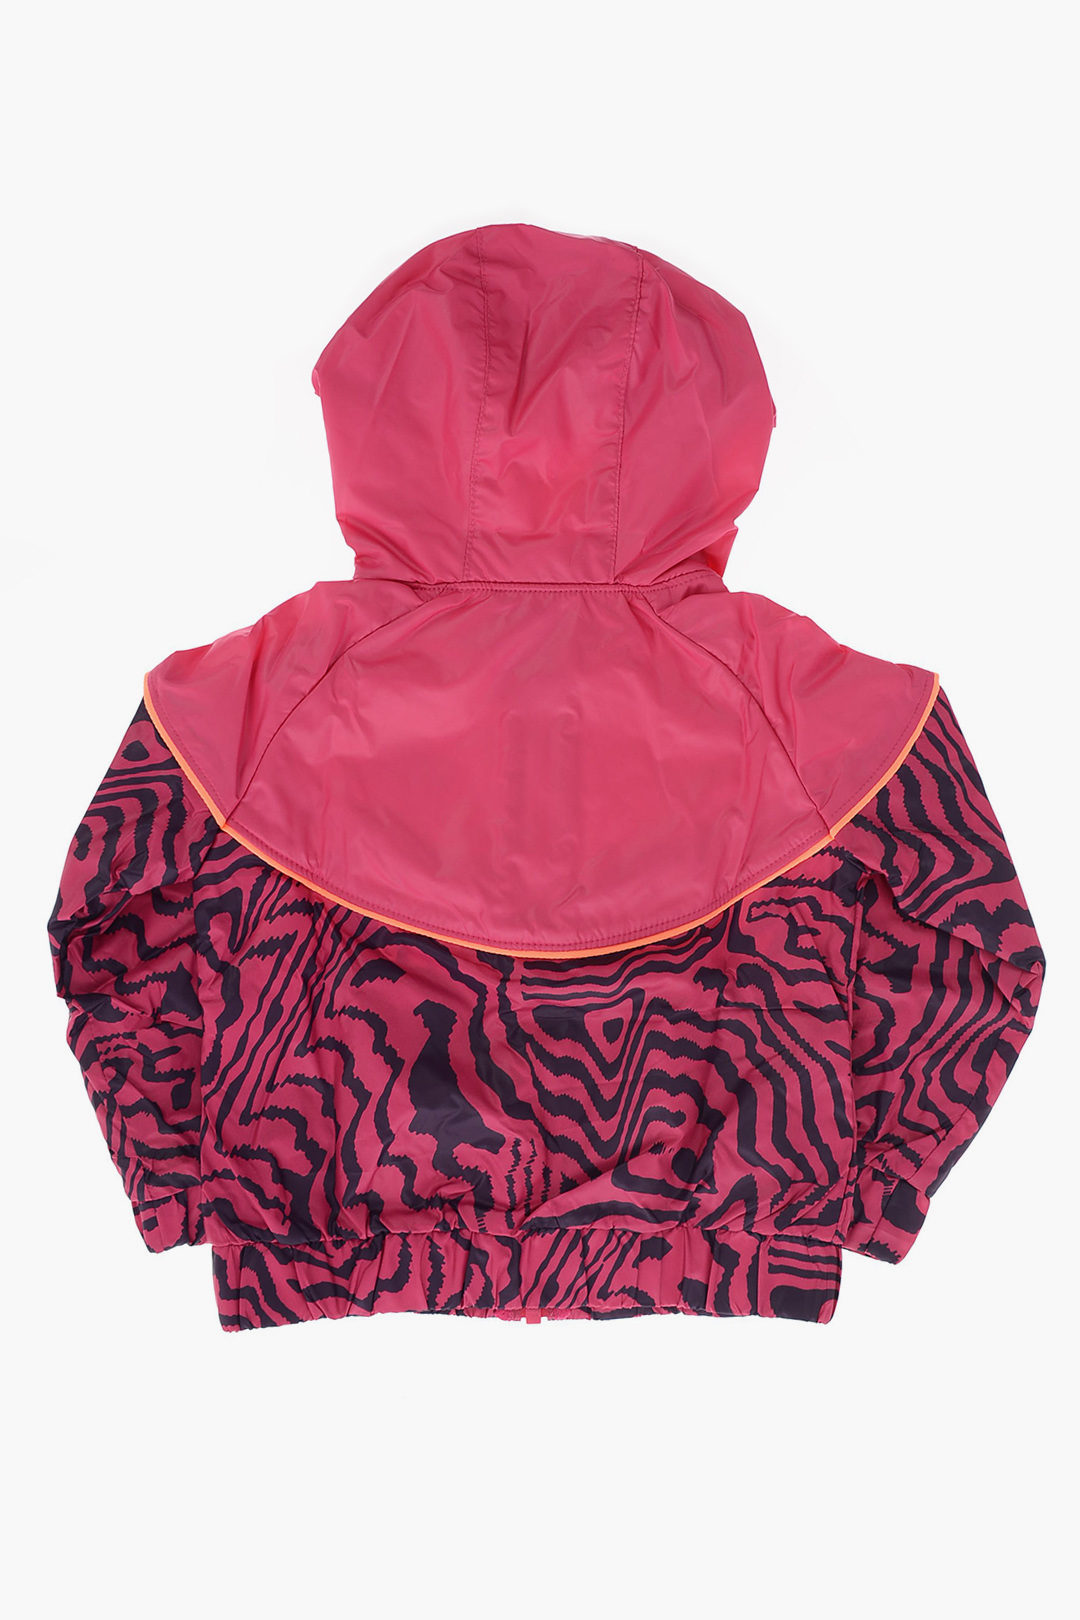 Nike KIDS Hooded Zebra-Print GLOW DARK girls - Glamood Outlet